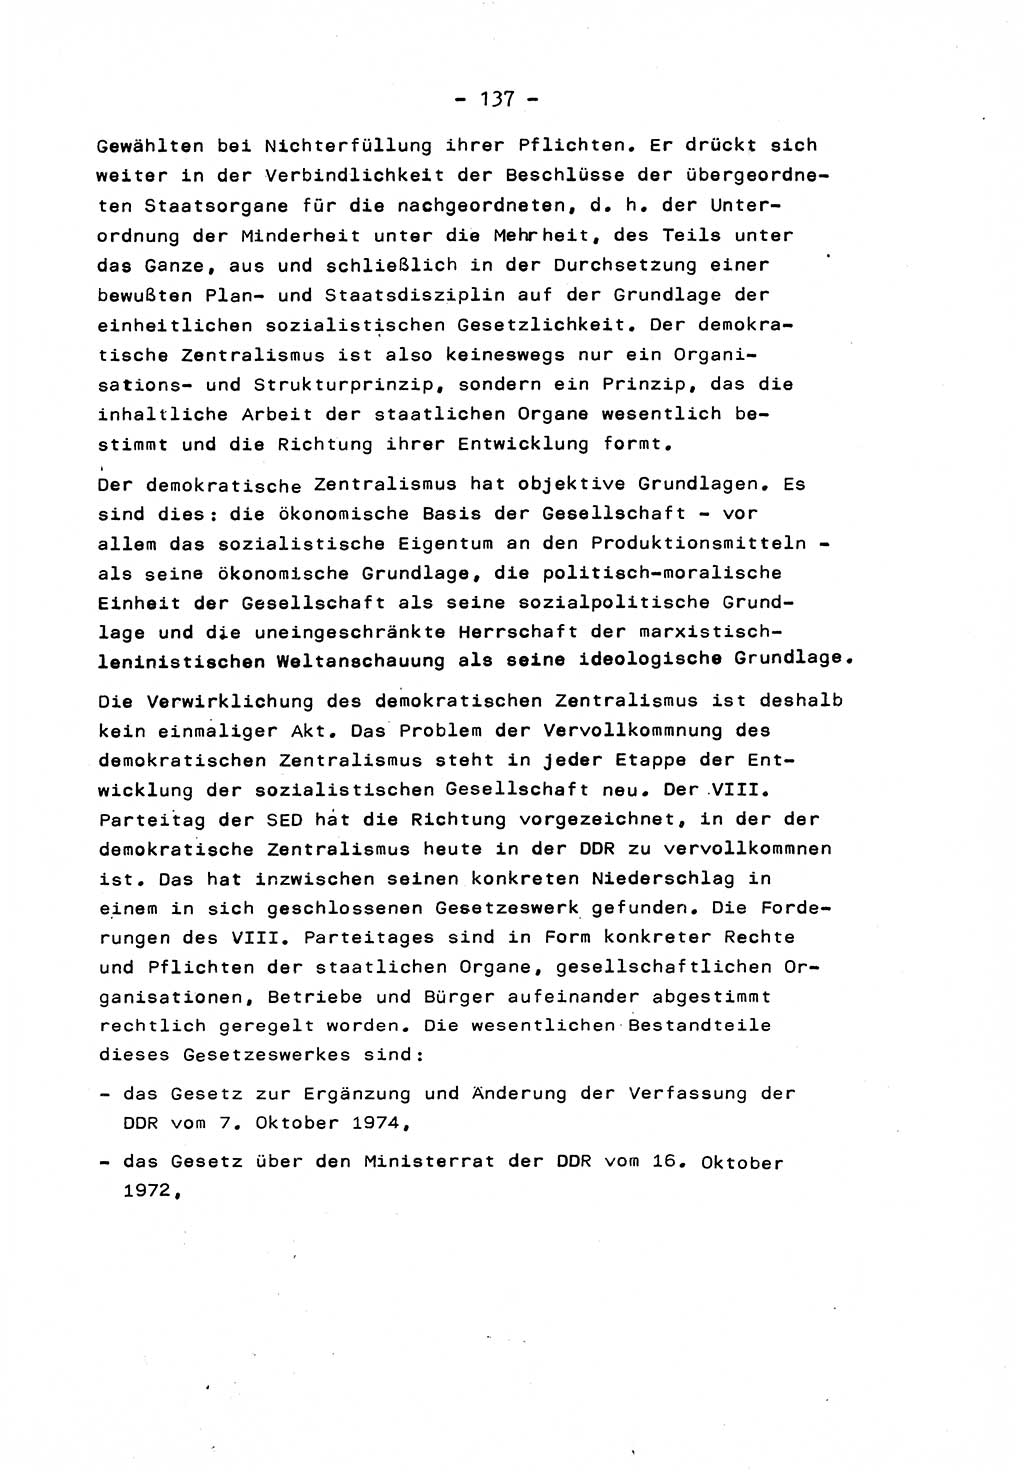 Marxistisch-leninistische Staats- und Rechtstheorie [Deutsche Demokratische Republik (DDR)] 1975, Seite 137 (ML St.-R.-Th. DDR 1975, S. 137)